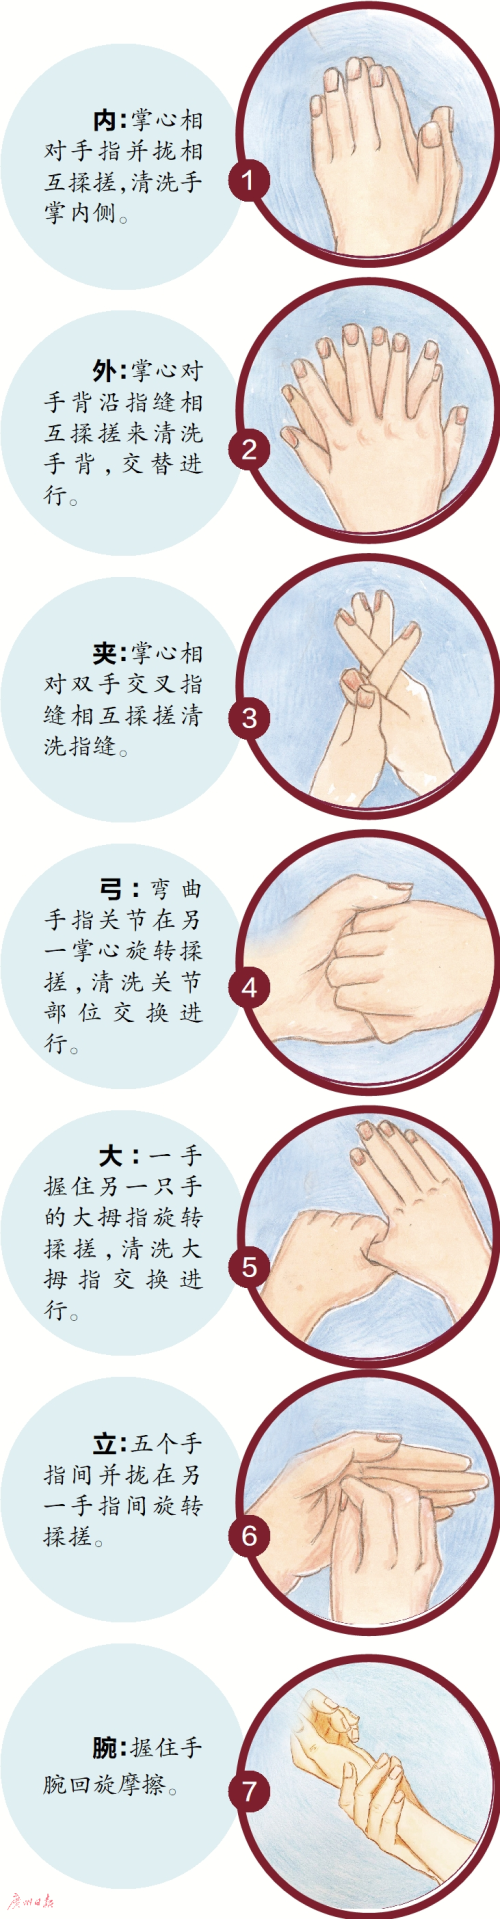 规范洗手 用七步洗手法